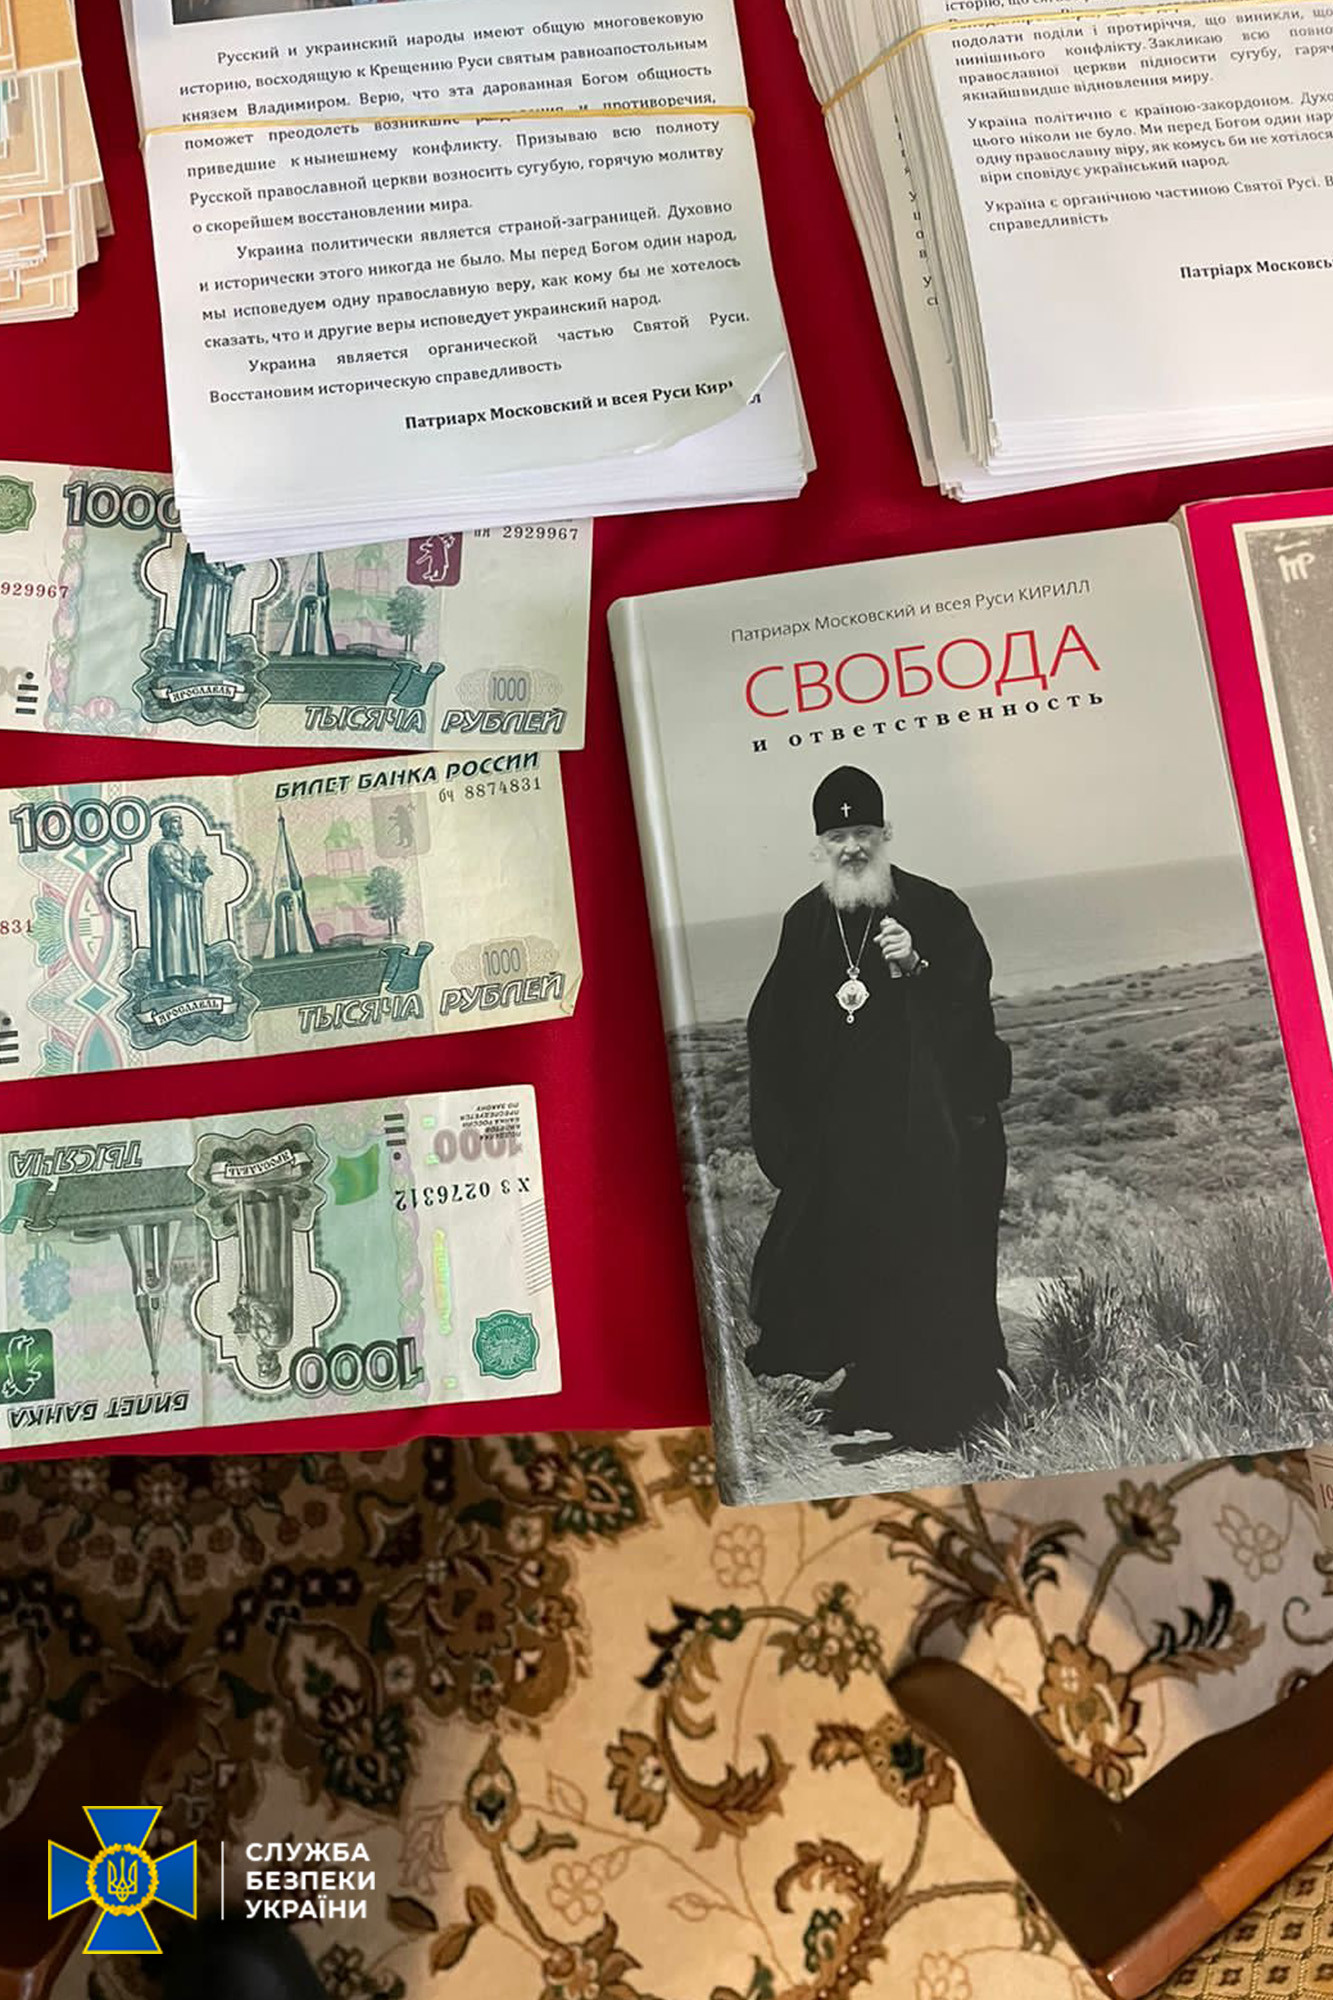 Проросійська література, паспорти СРСР і мільйони готівки - деталі обшуків у Києво-Печерській лаврі